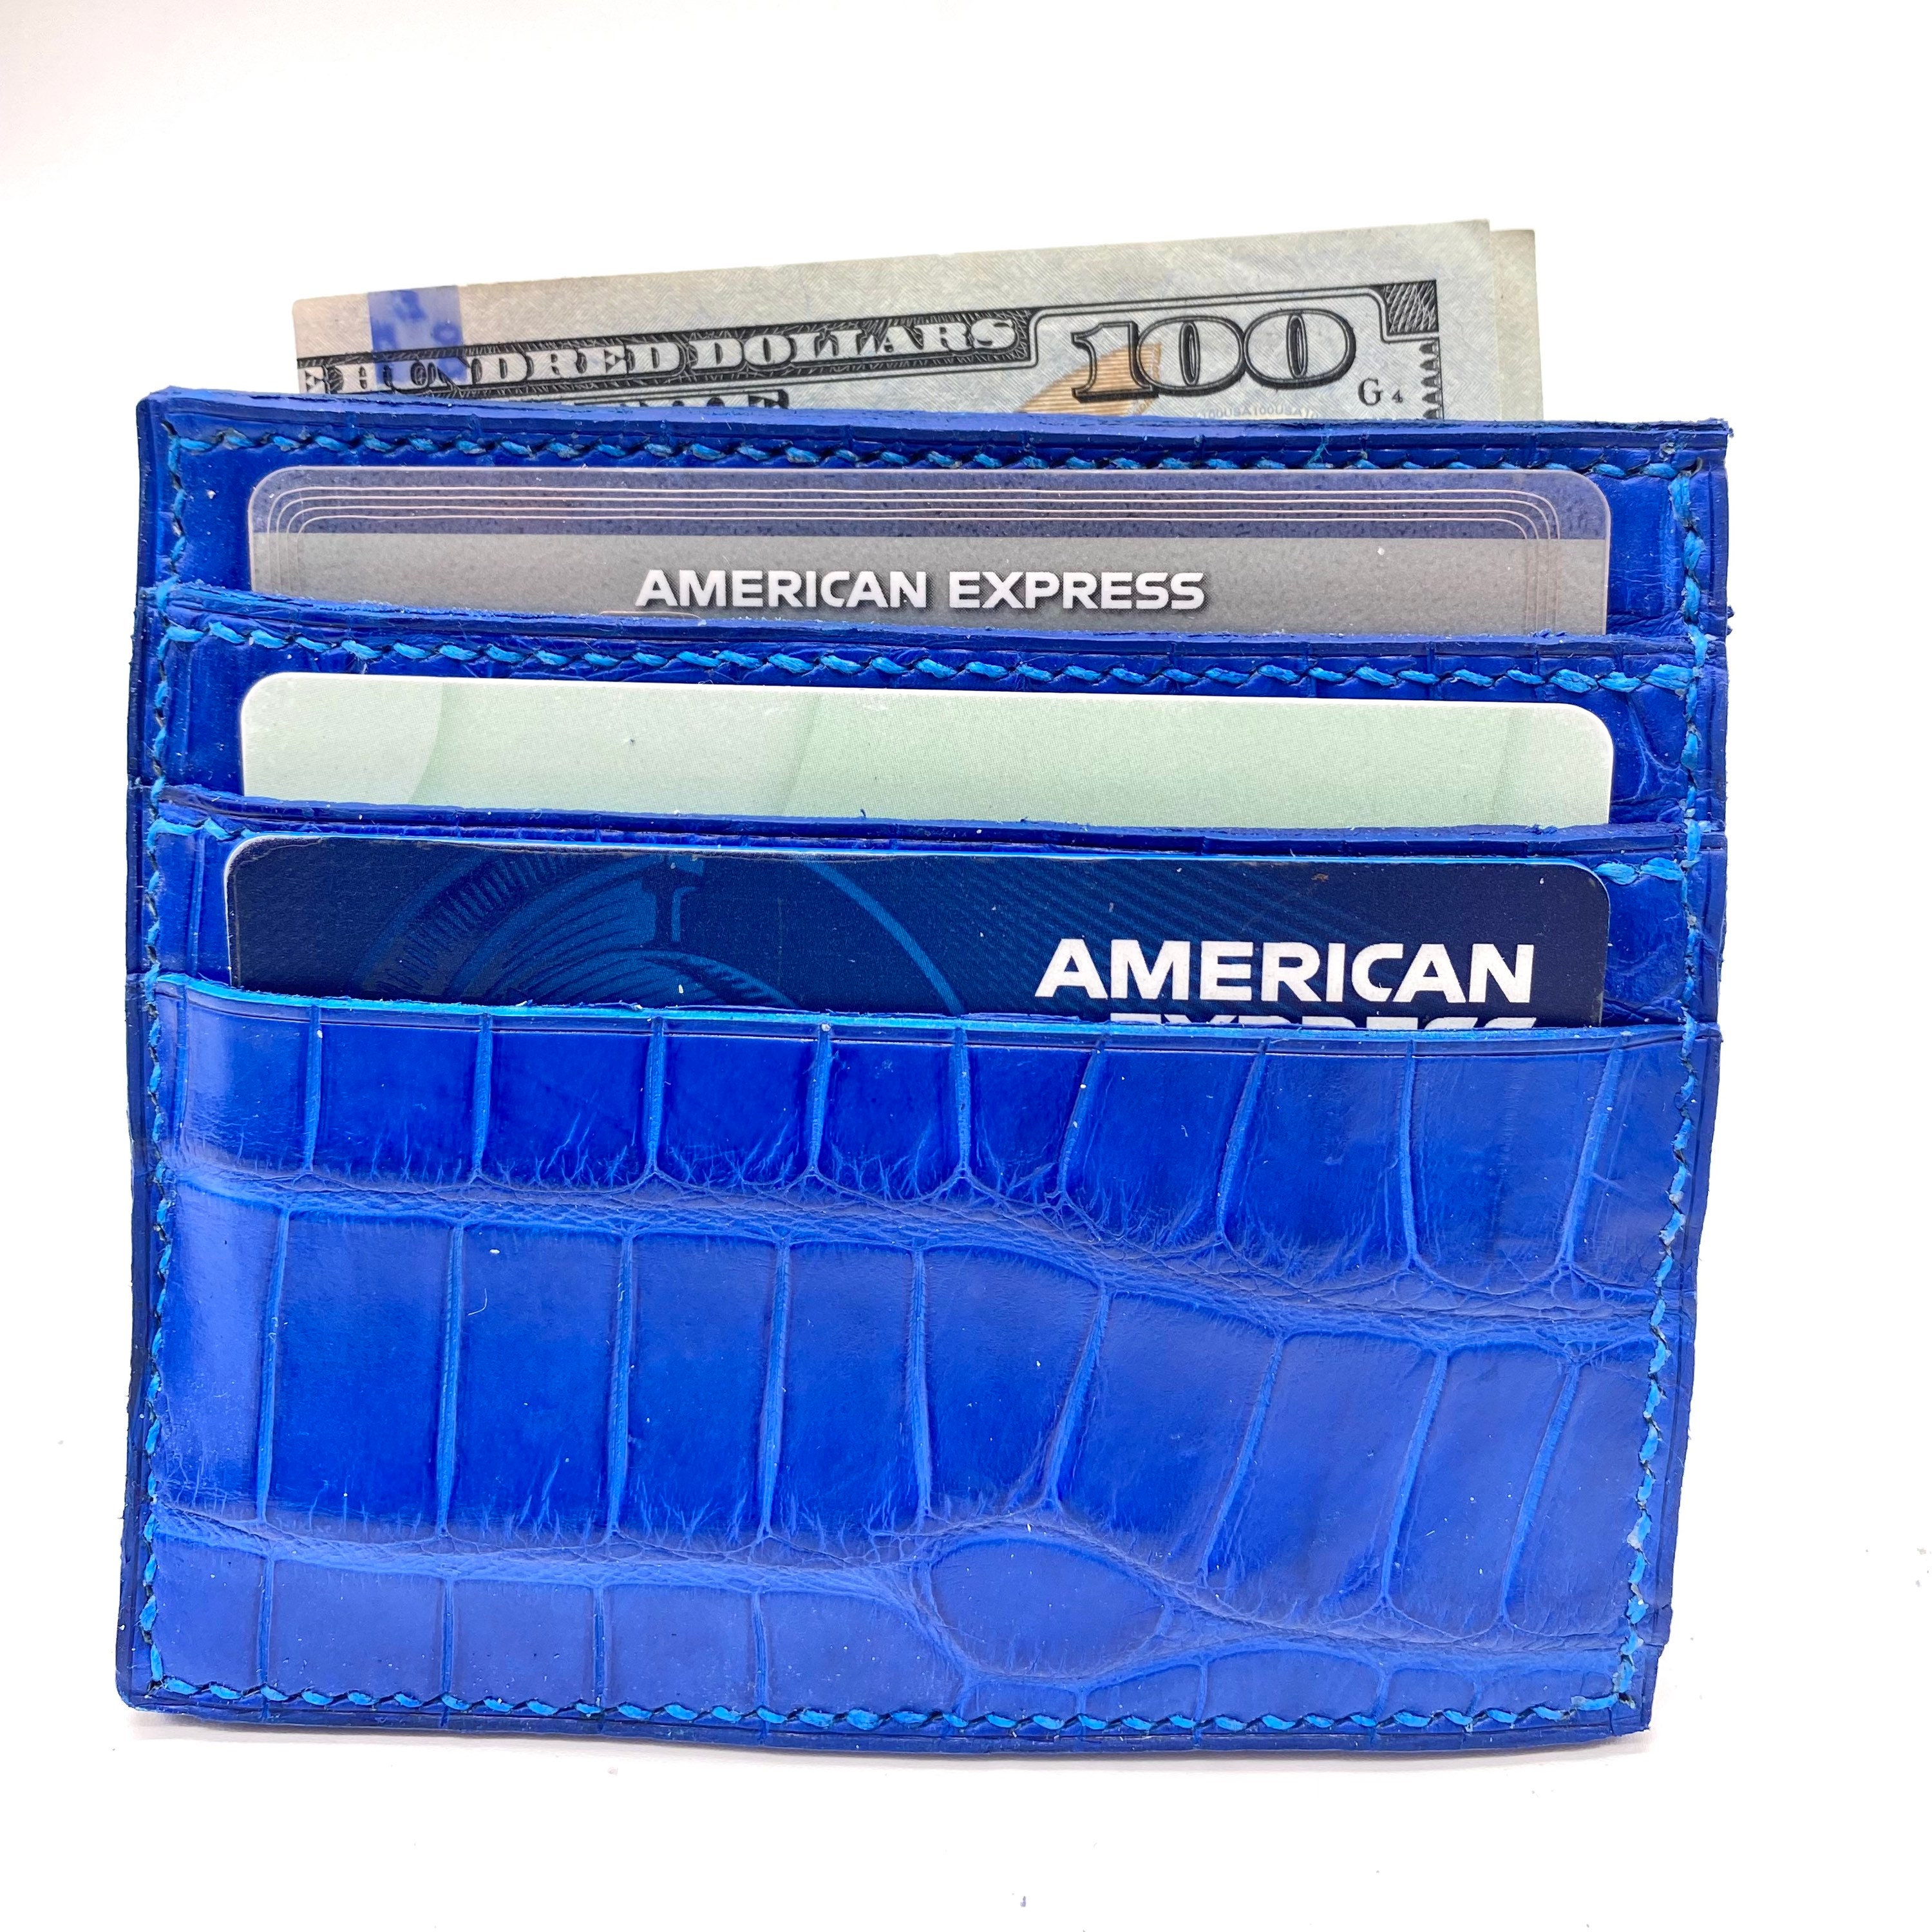 Money Clip Wallet dark blue semi matte alligator - Maison Jean